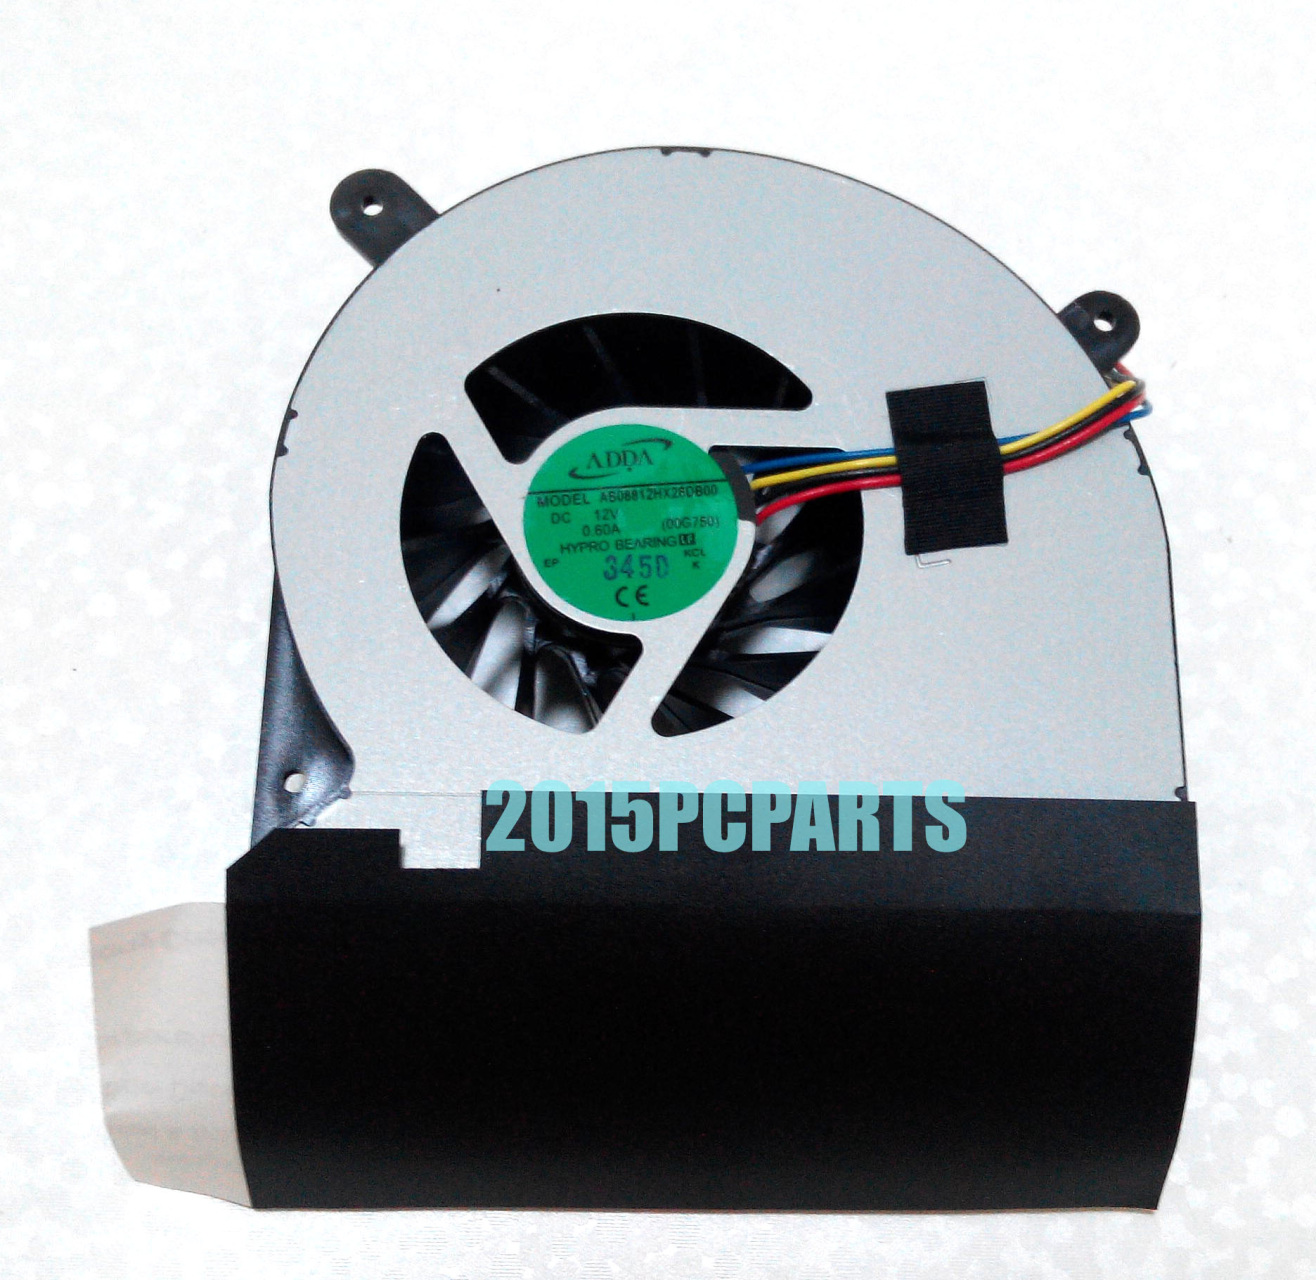 HK-Part Fan for Asus Rog G750 G750J G750JH G750JM G750JS G750JW G750JX G750JZ G750V CPU Cooling Fan DC12V 15mm